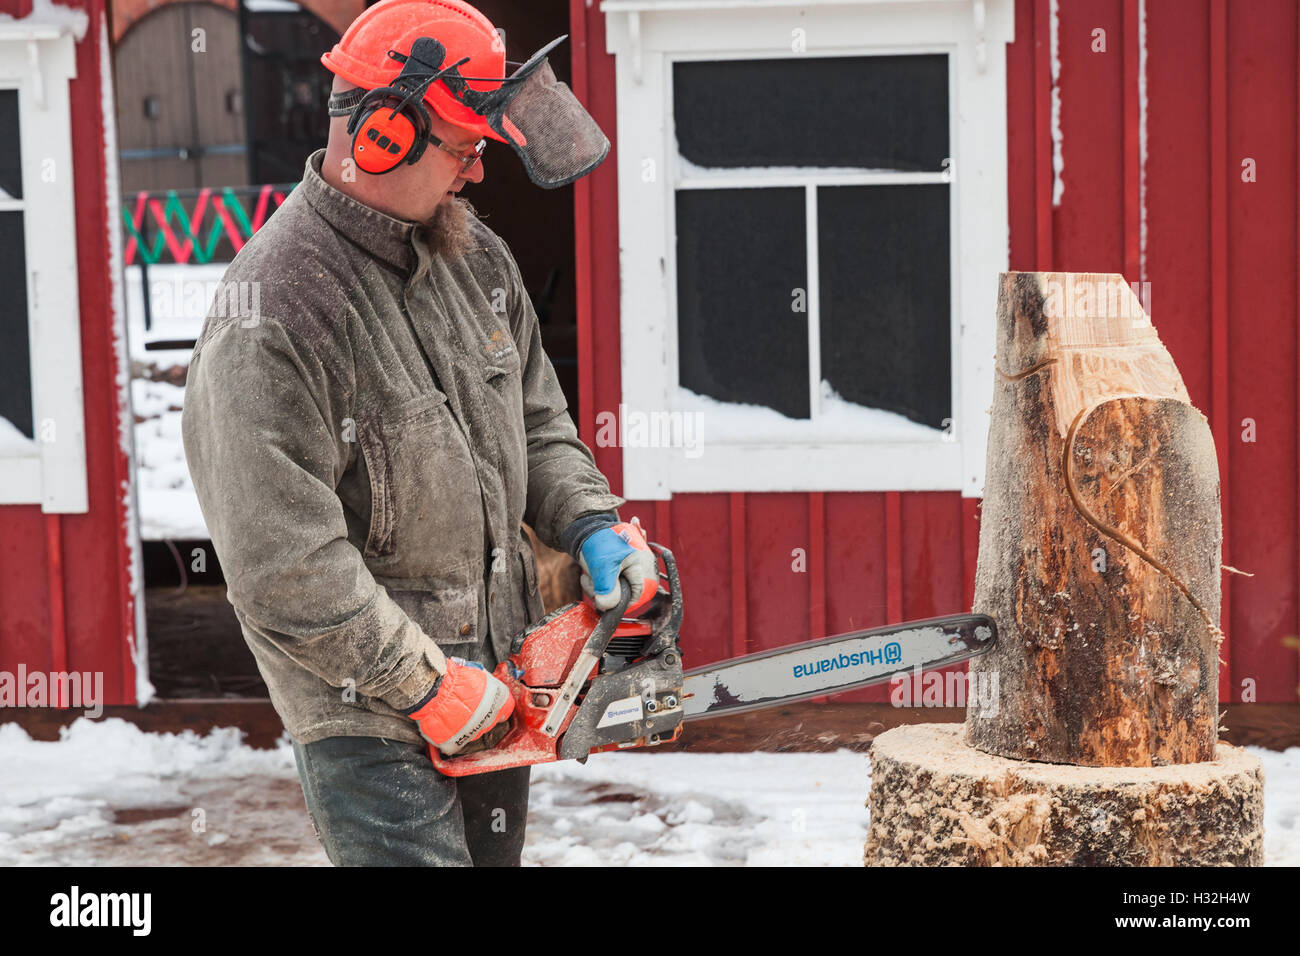 Hamina, Finlande - le 13 décembre 2014 : maître sculpteur finlandais avec une tronçonneuse produit d'oiseaux en bois sculpture Banque D'Images